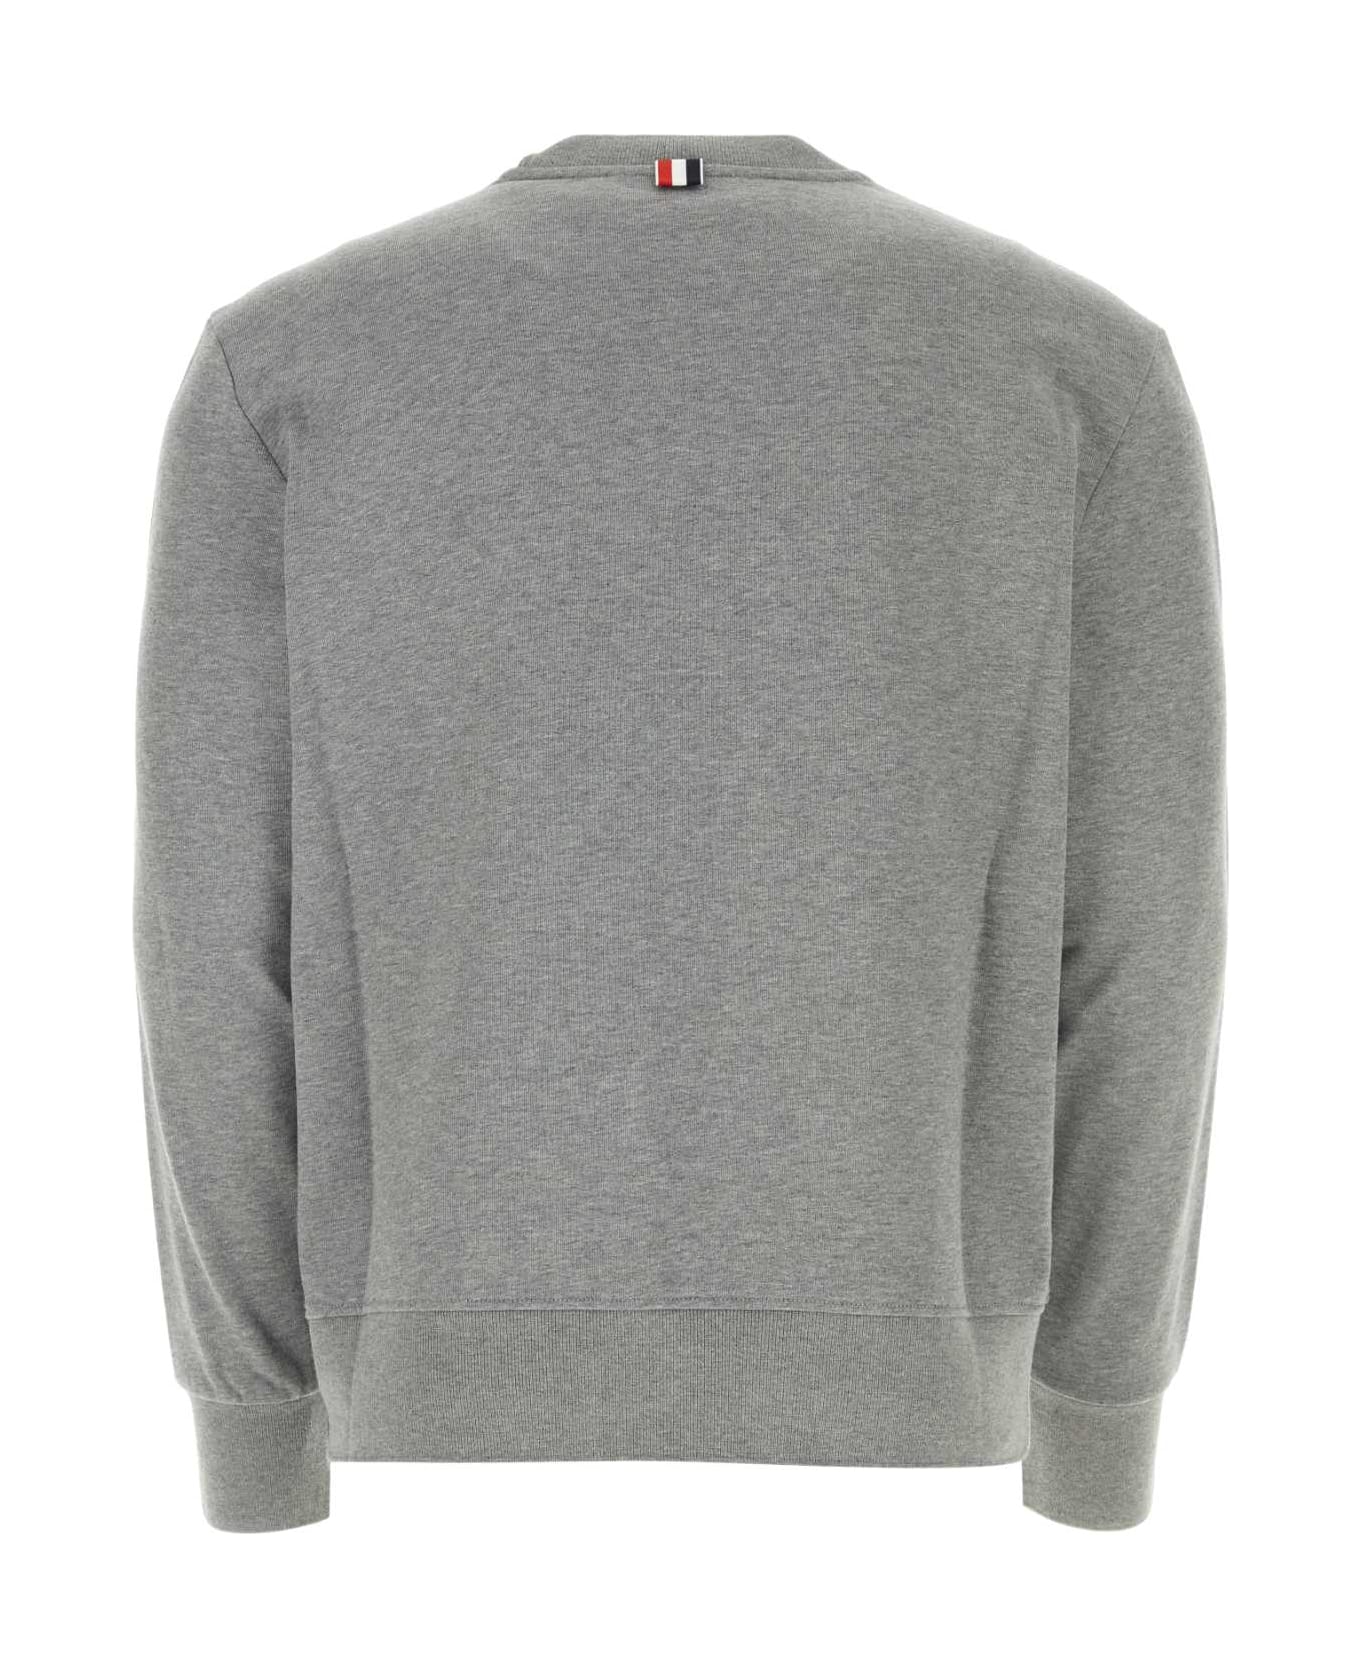 Thom Browne Melange Grey Cotton Sweatshirt - LTGREY